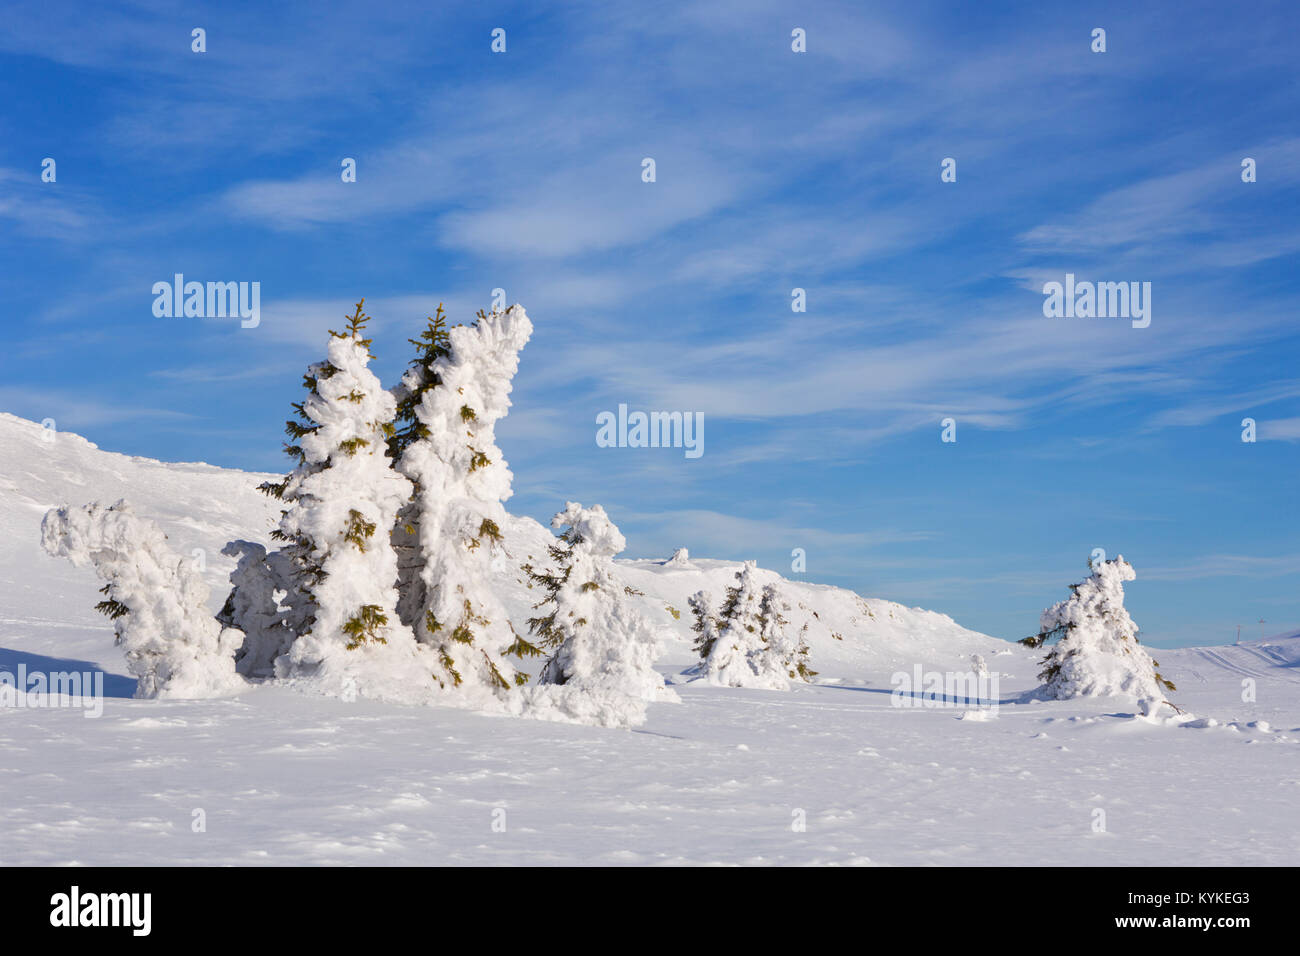 Les arbres gelés dans un paysage d'hiver enneigé à Trysil, Norvège. Photographié sur une journée ensoleillée. Banque D'Images